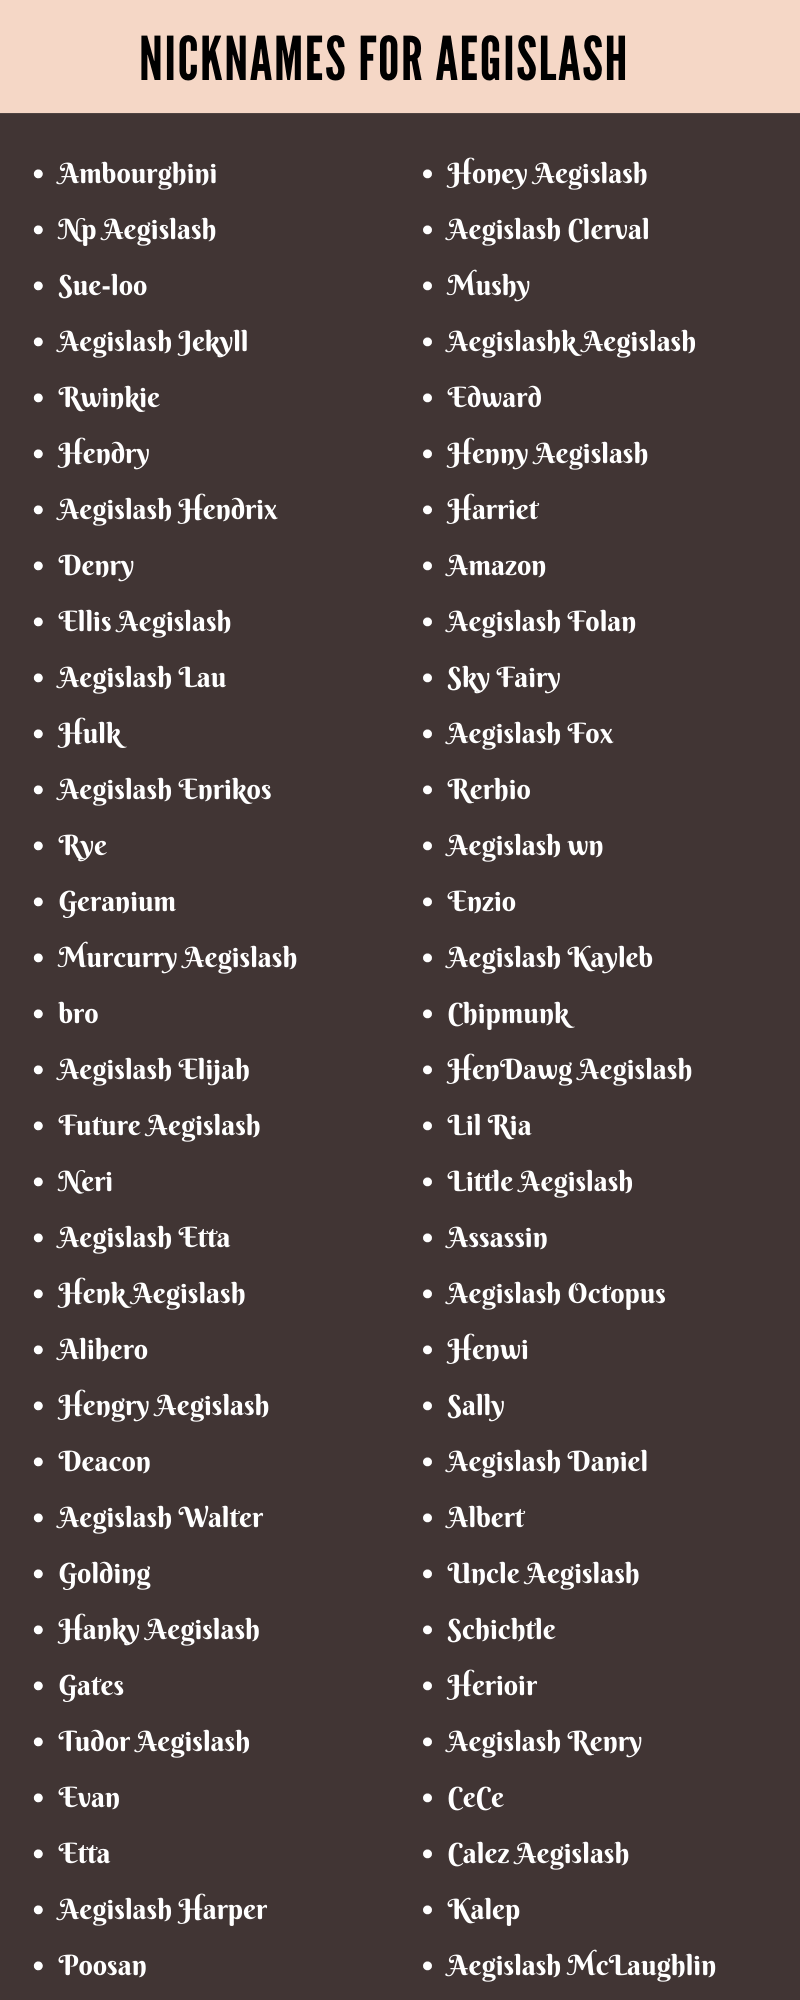 Nicknames For Aegislash